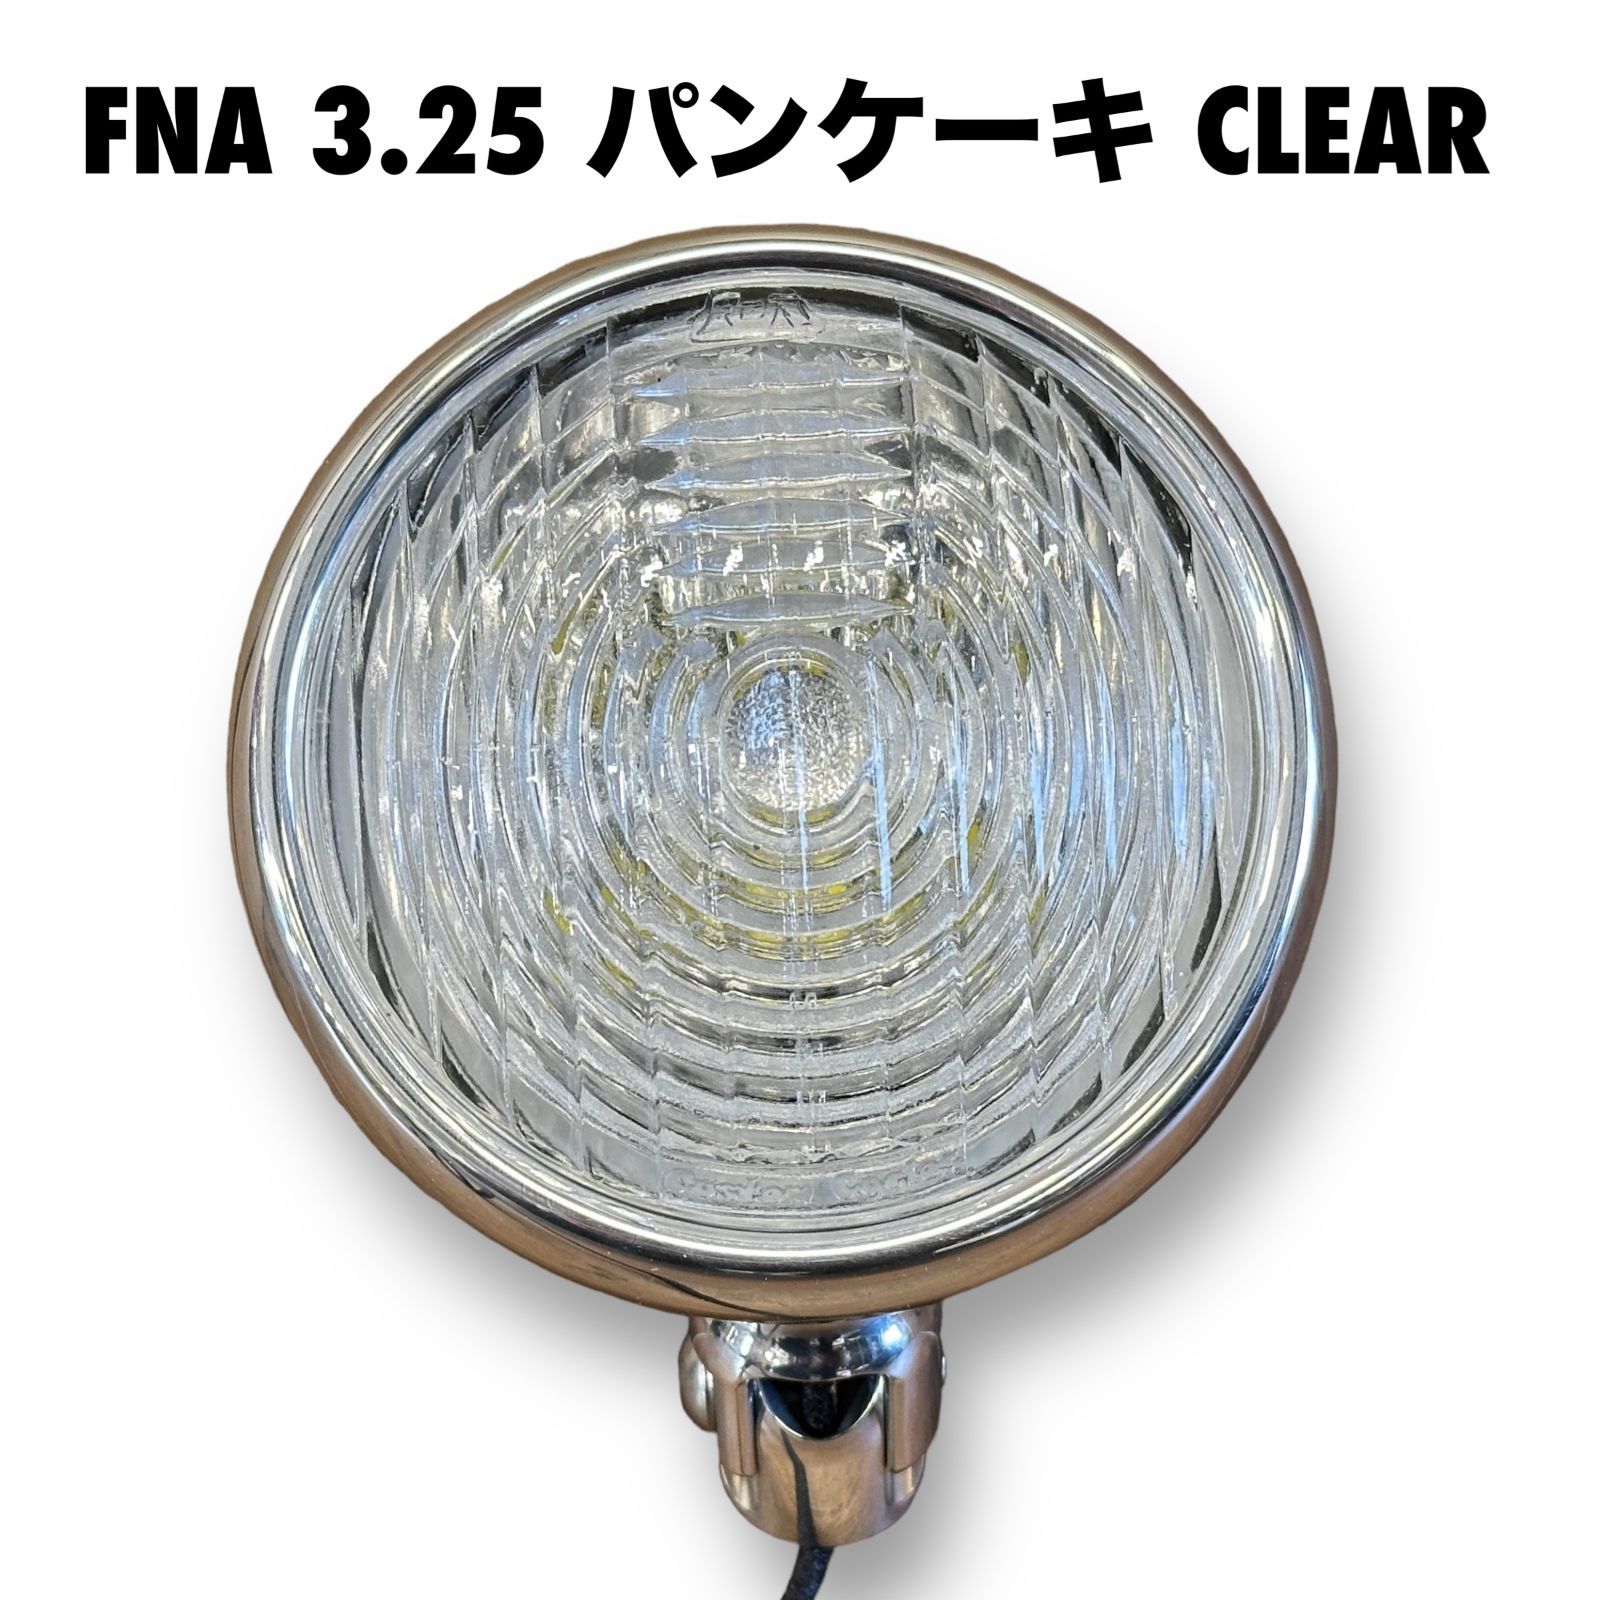 FNA 3.25 パンケーキヘッドライト CLEAR クリア ビンテージ ライト ...